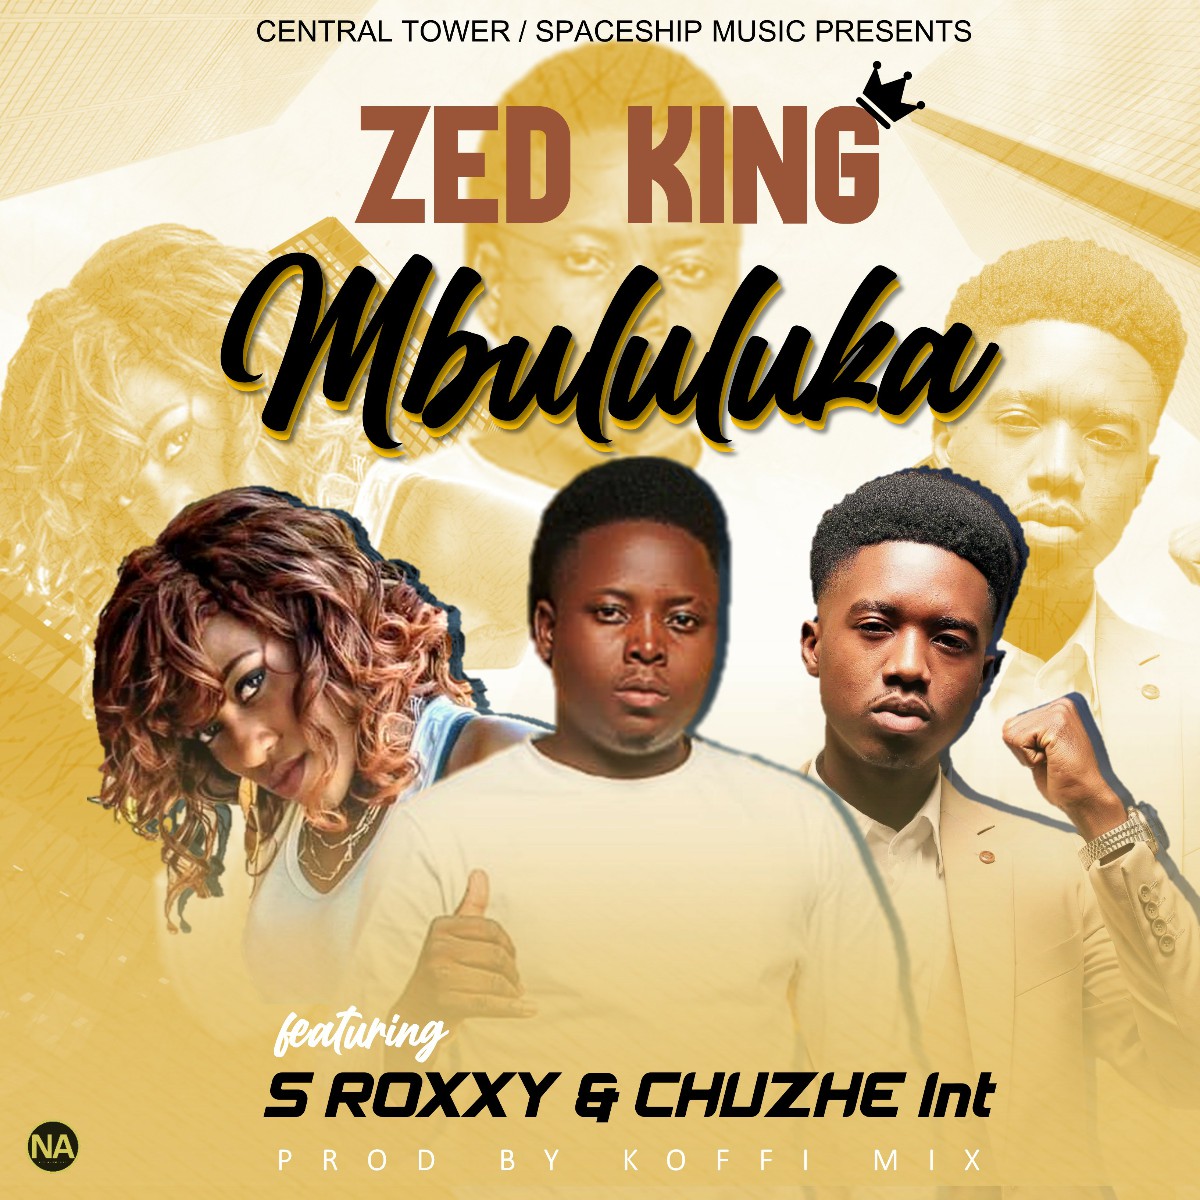 Zed King ft. S Roxxy & Chuzhe Int - Mbululuka